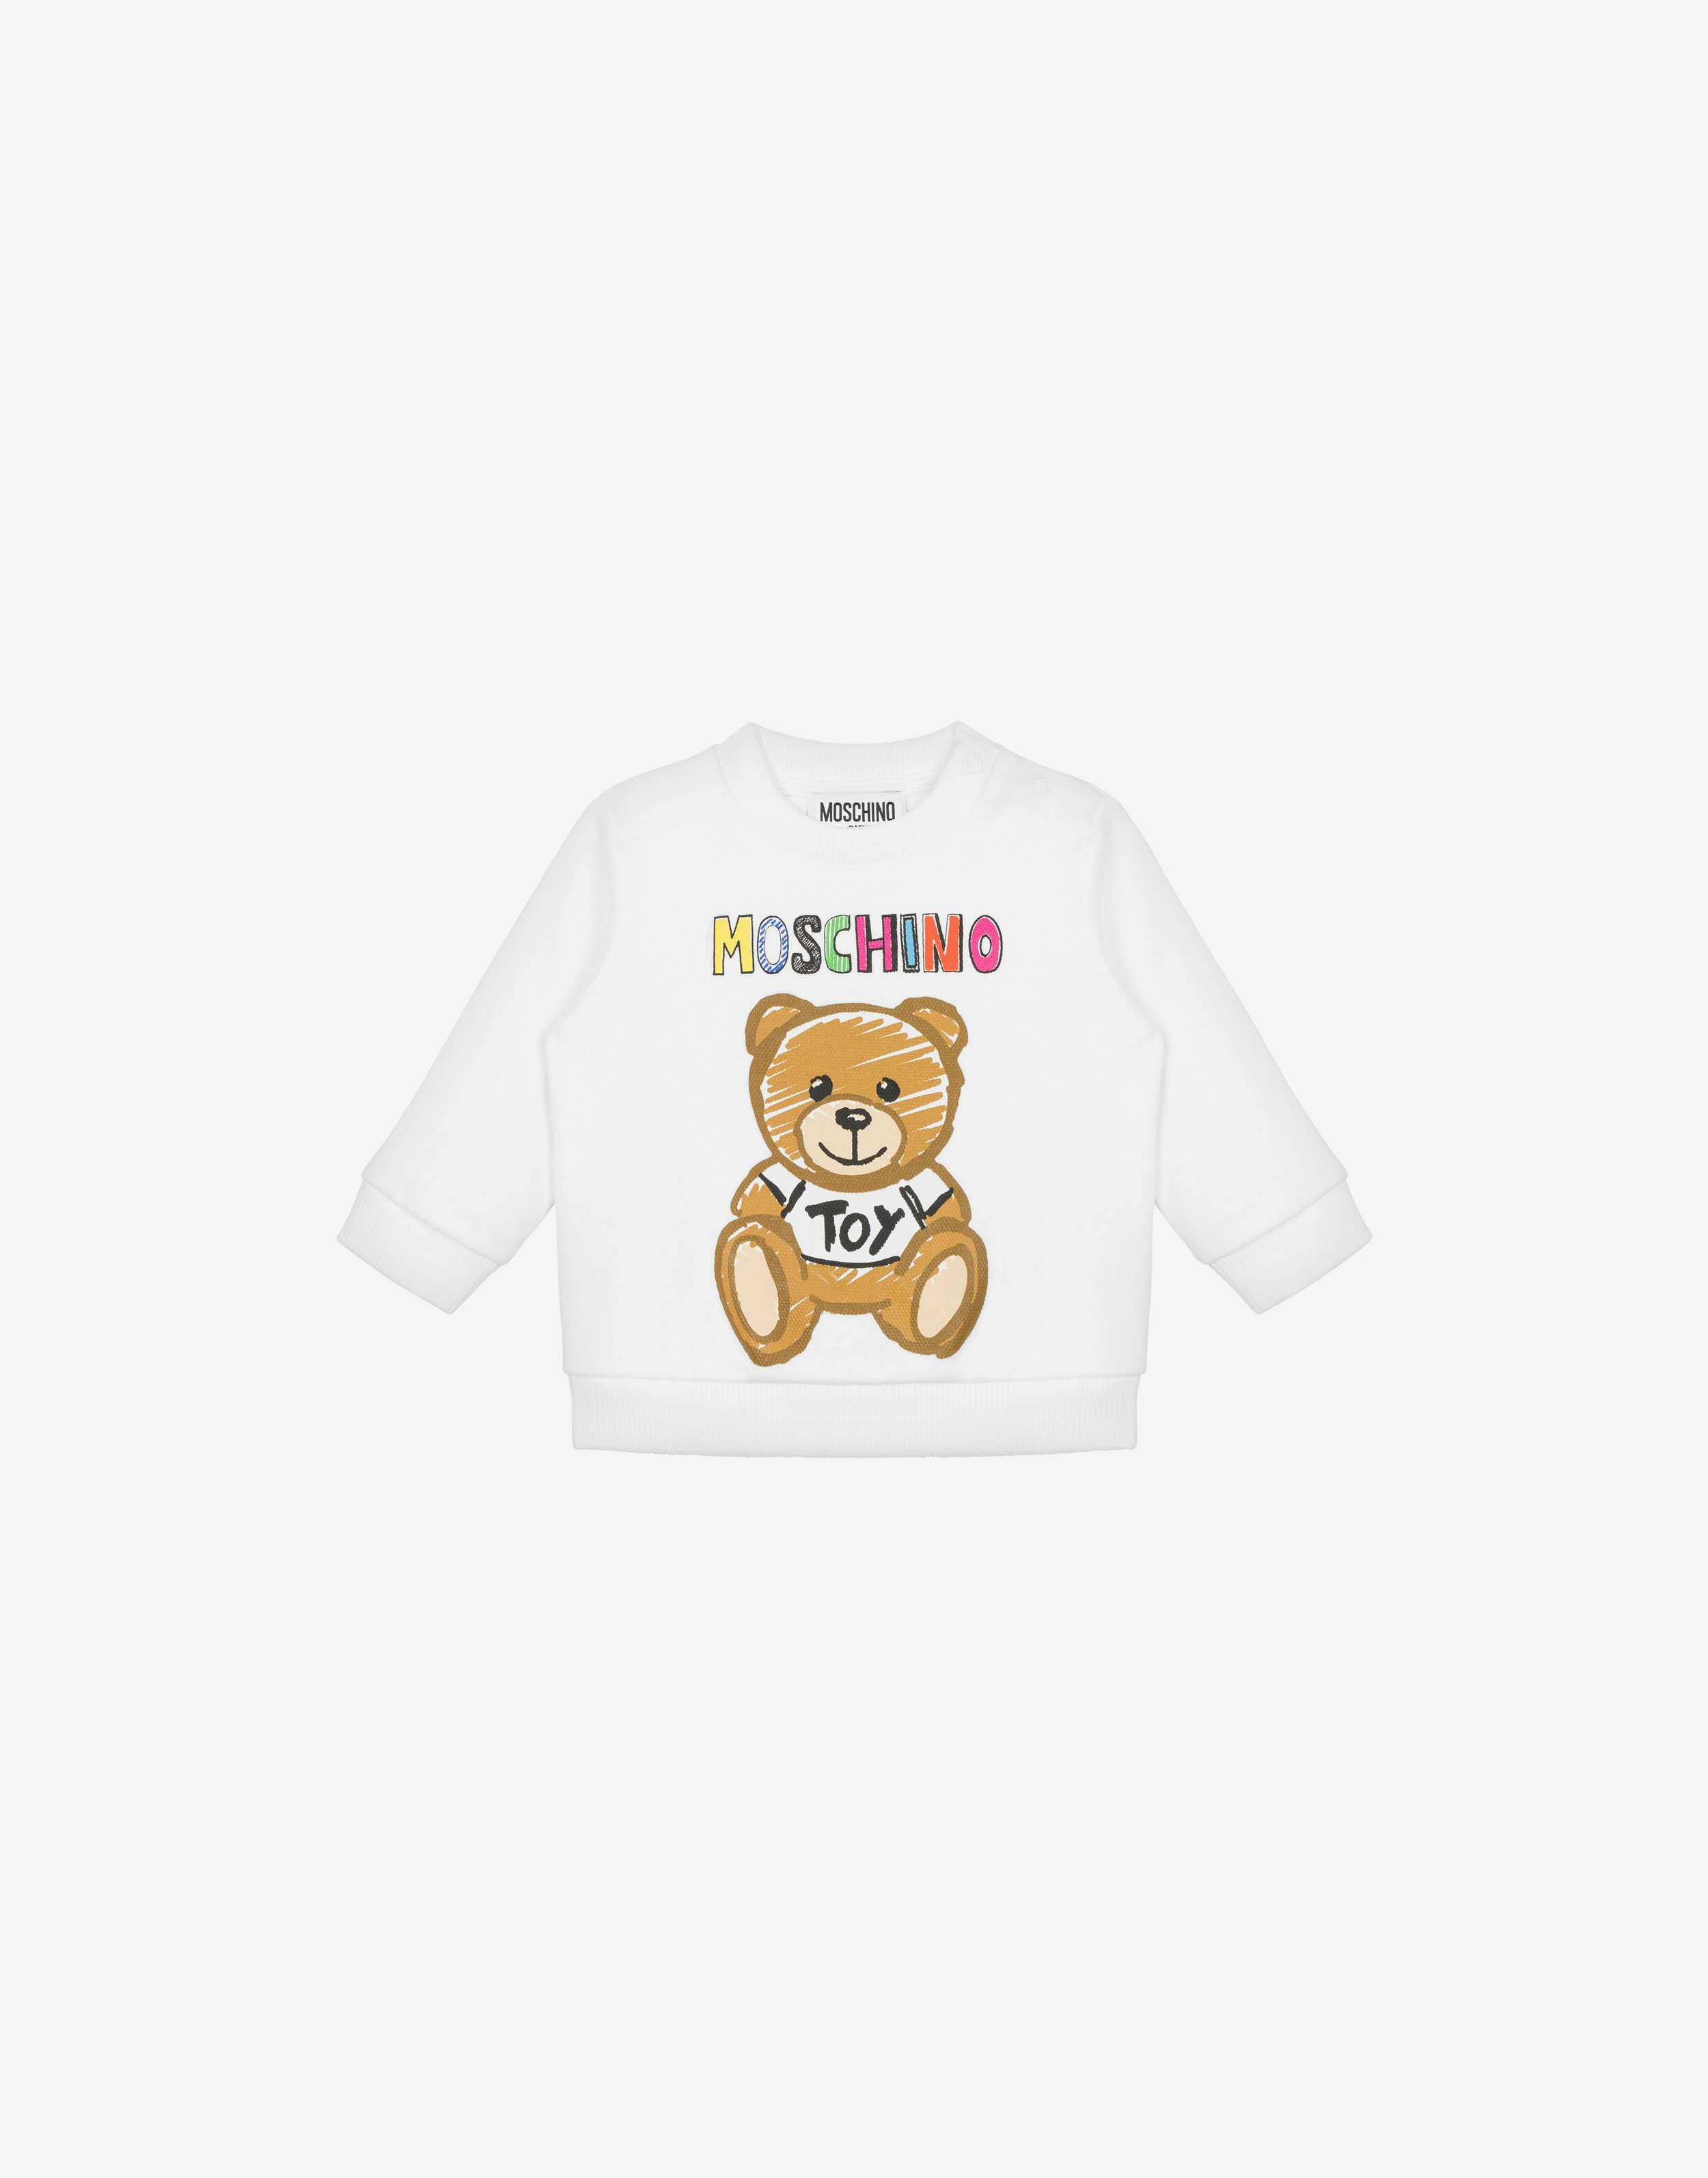 Drawn Teddy Bear Cotton Sweatshirt